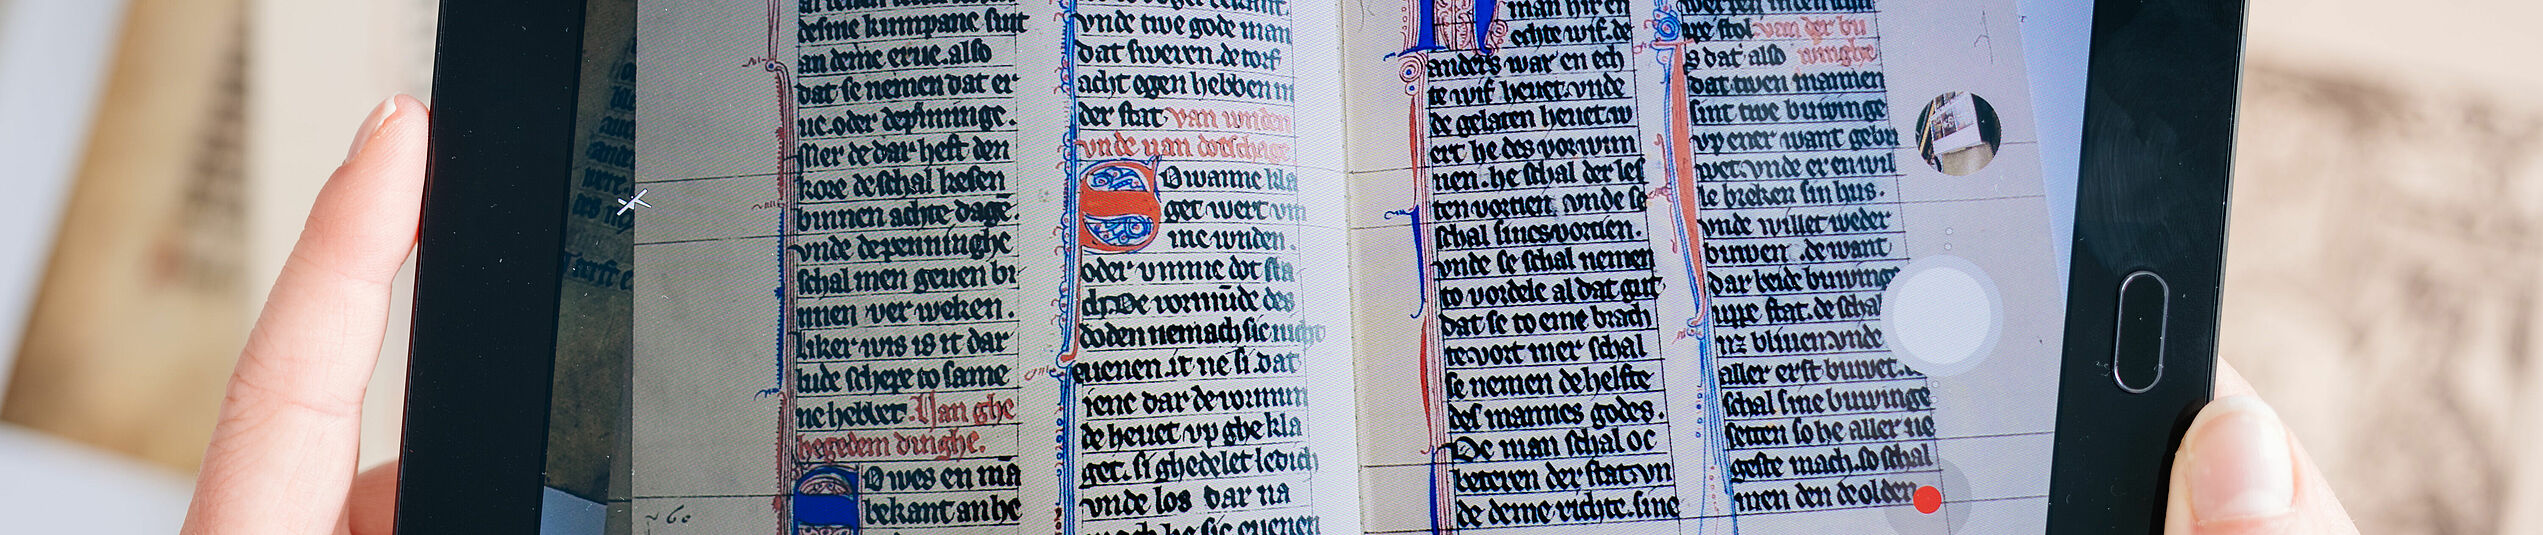 Auf einem beidh?ndig gehaltenen Tablet wird ein Buch mit mittelalterliche Schrift angezeigt